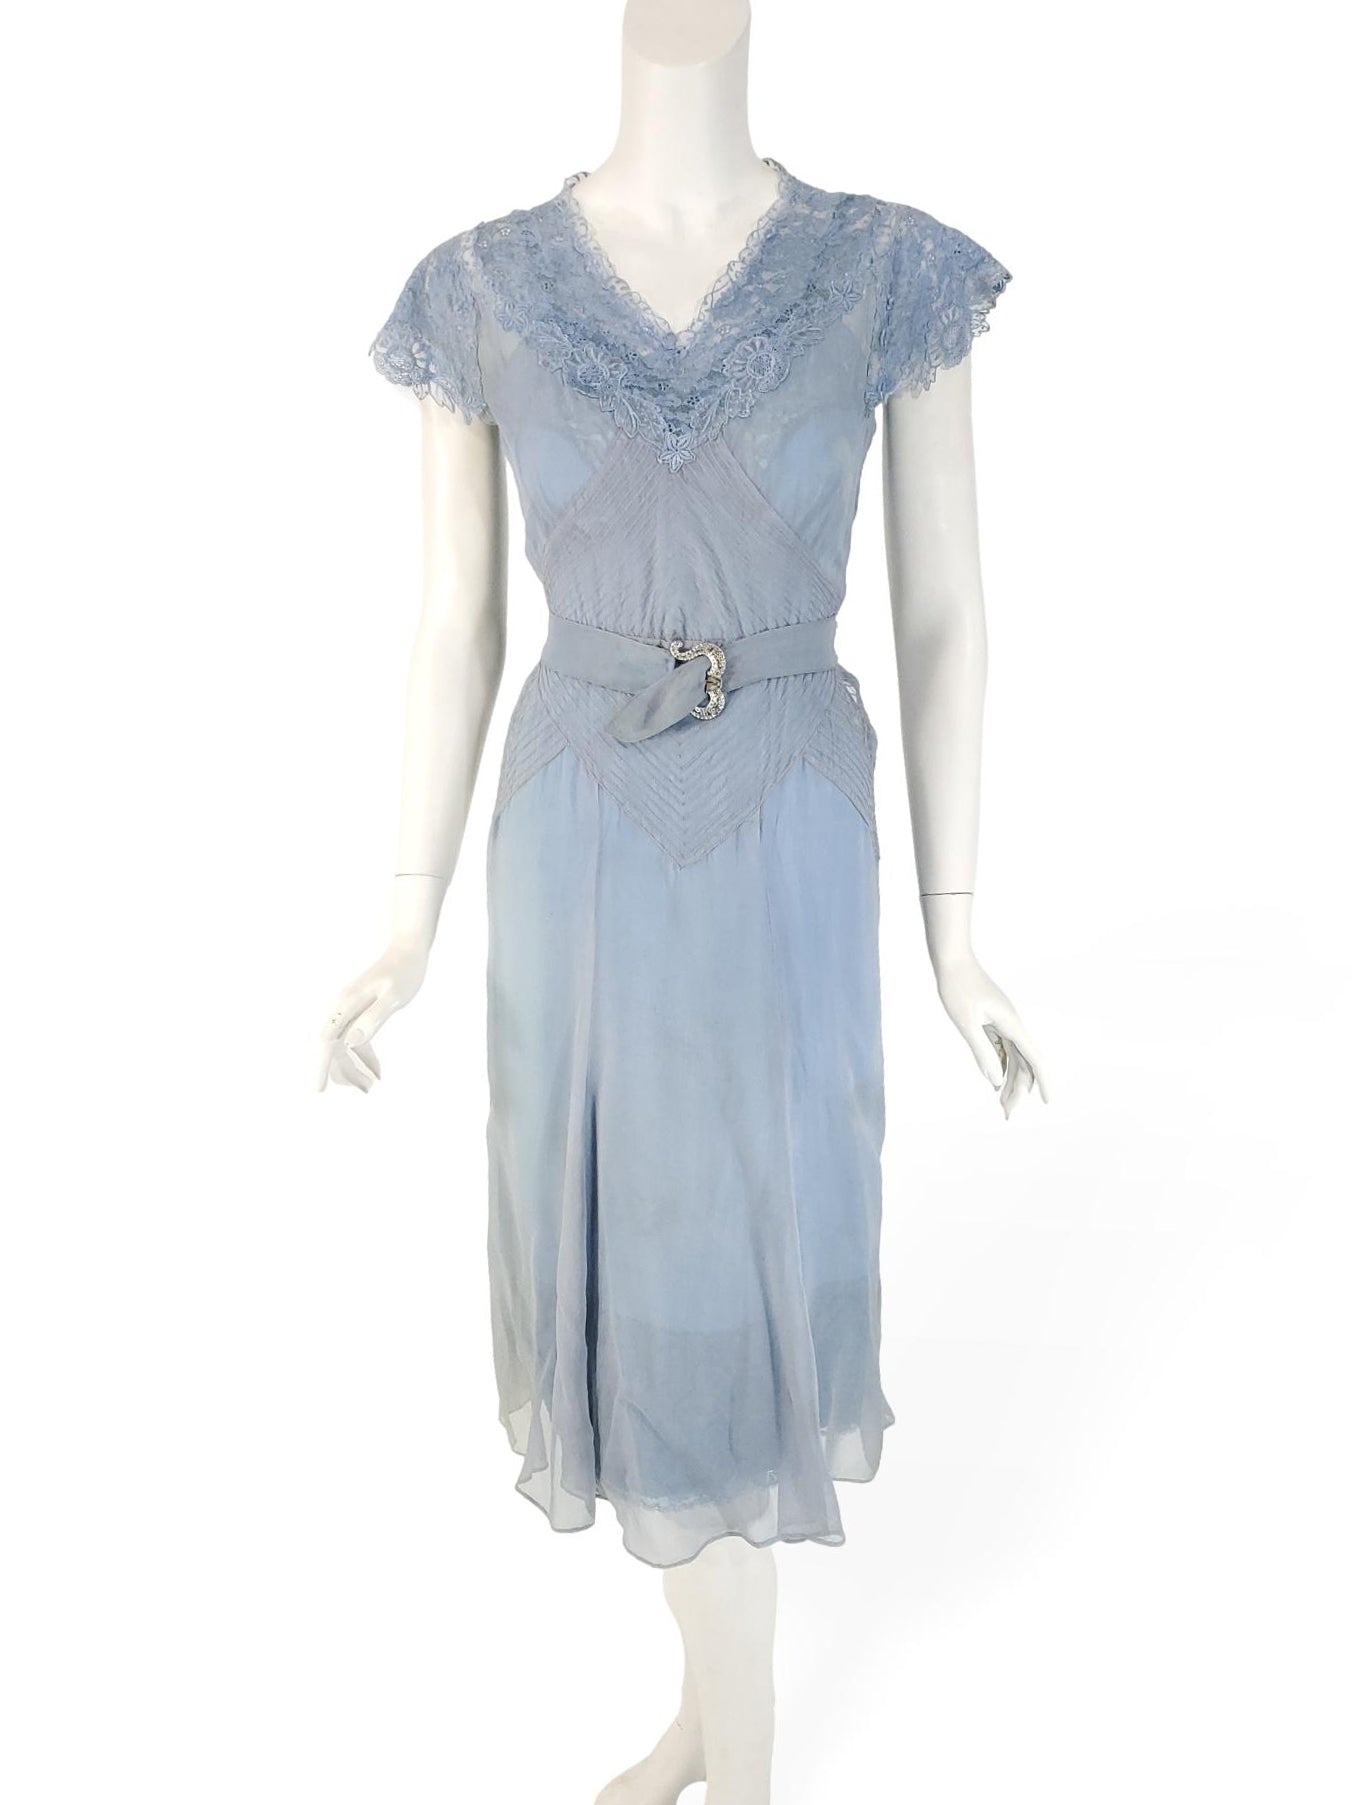 1930 dresses